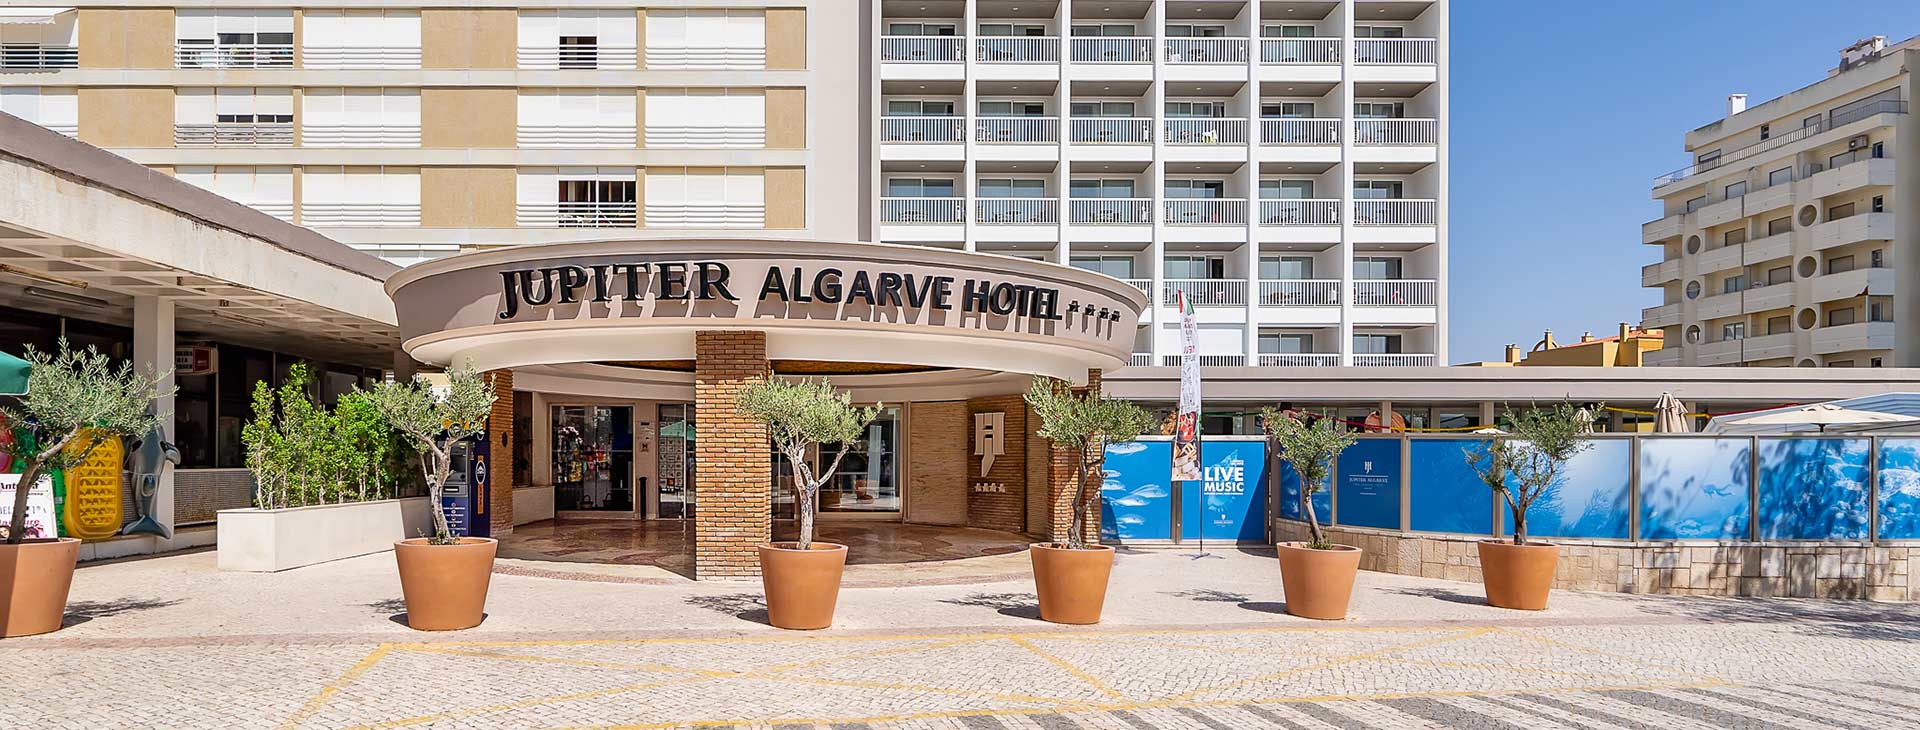 Jupiter Algarve Hotel Obrázok13